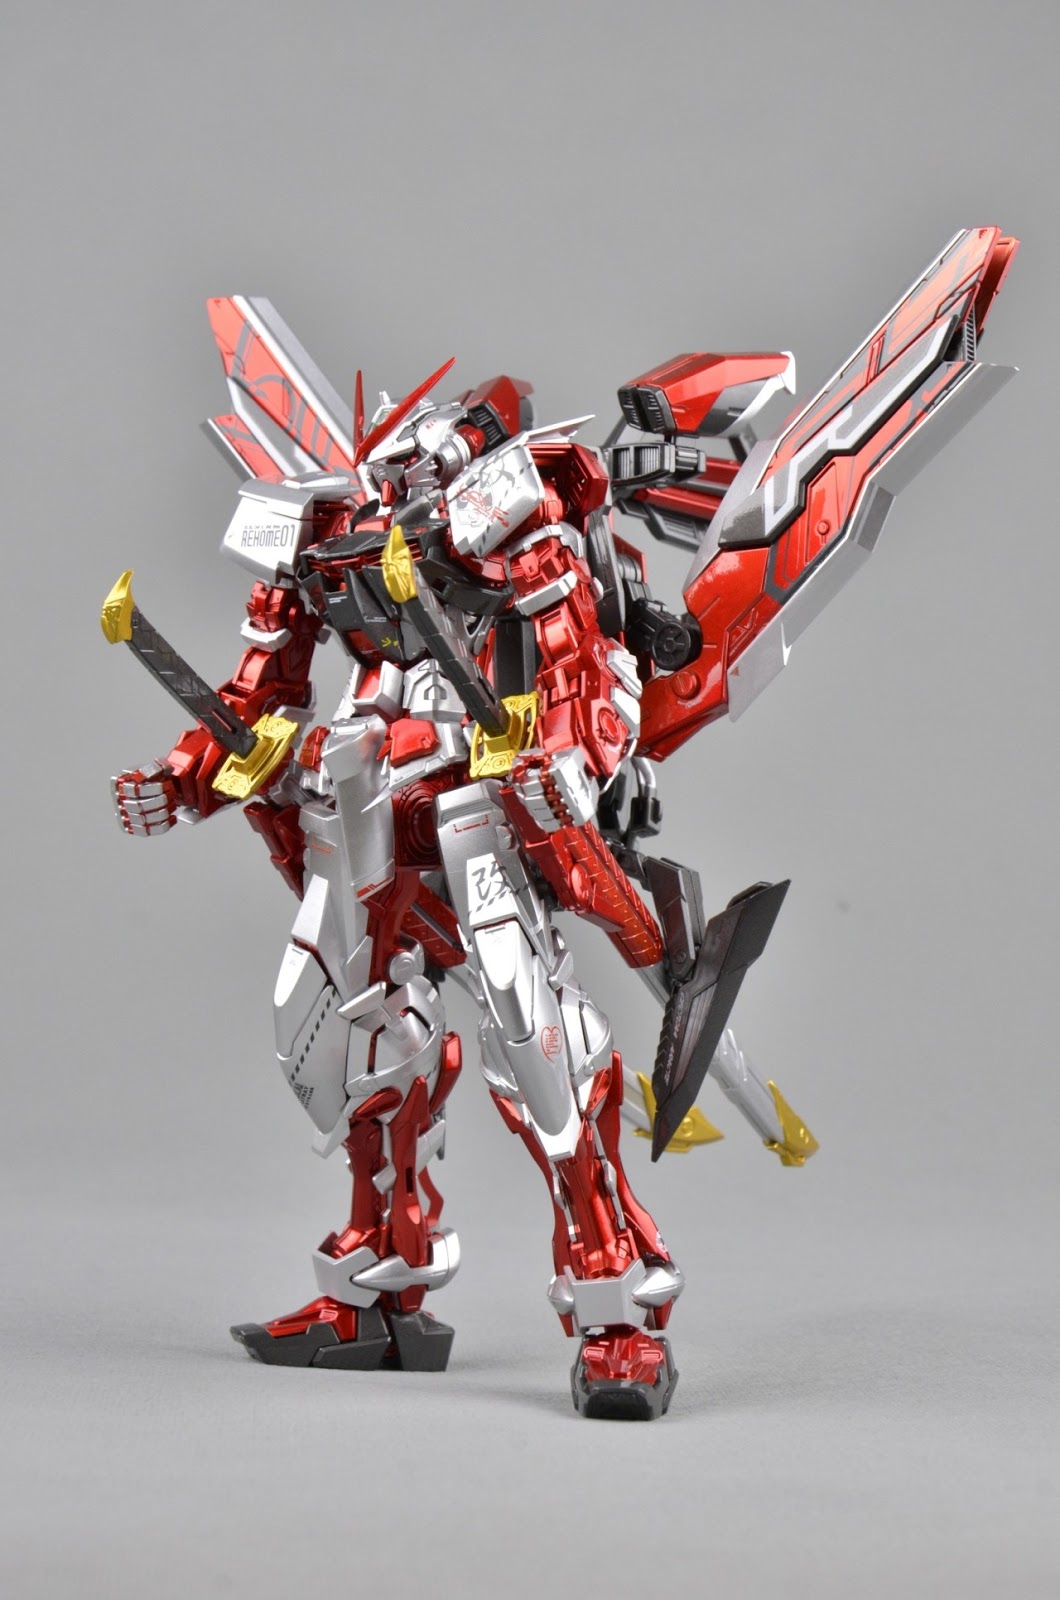 GUNDAM GUY: MG 1/100 Gundam Astray Red Frame - Metallic Painted Build